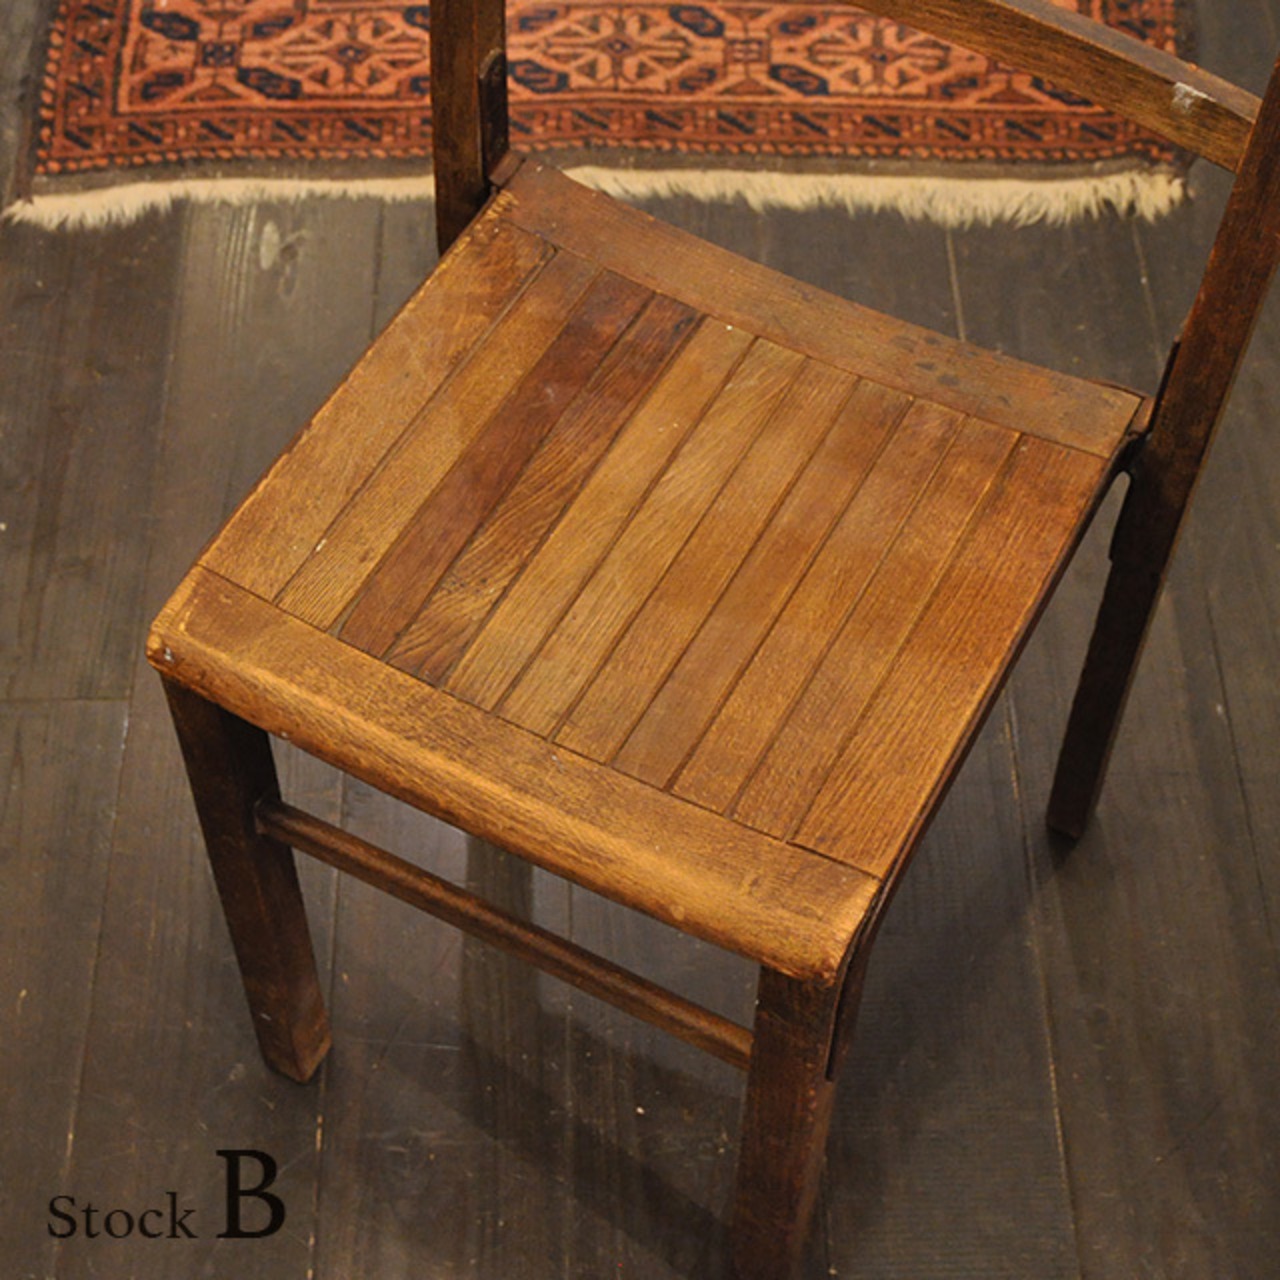 School Chair 【B】/ スクール チェア / 1911-0127b